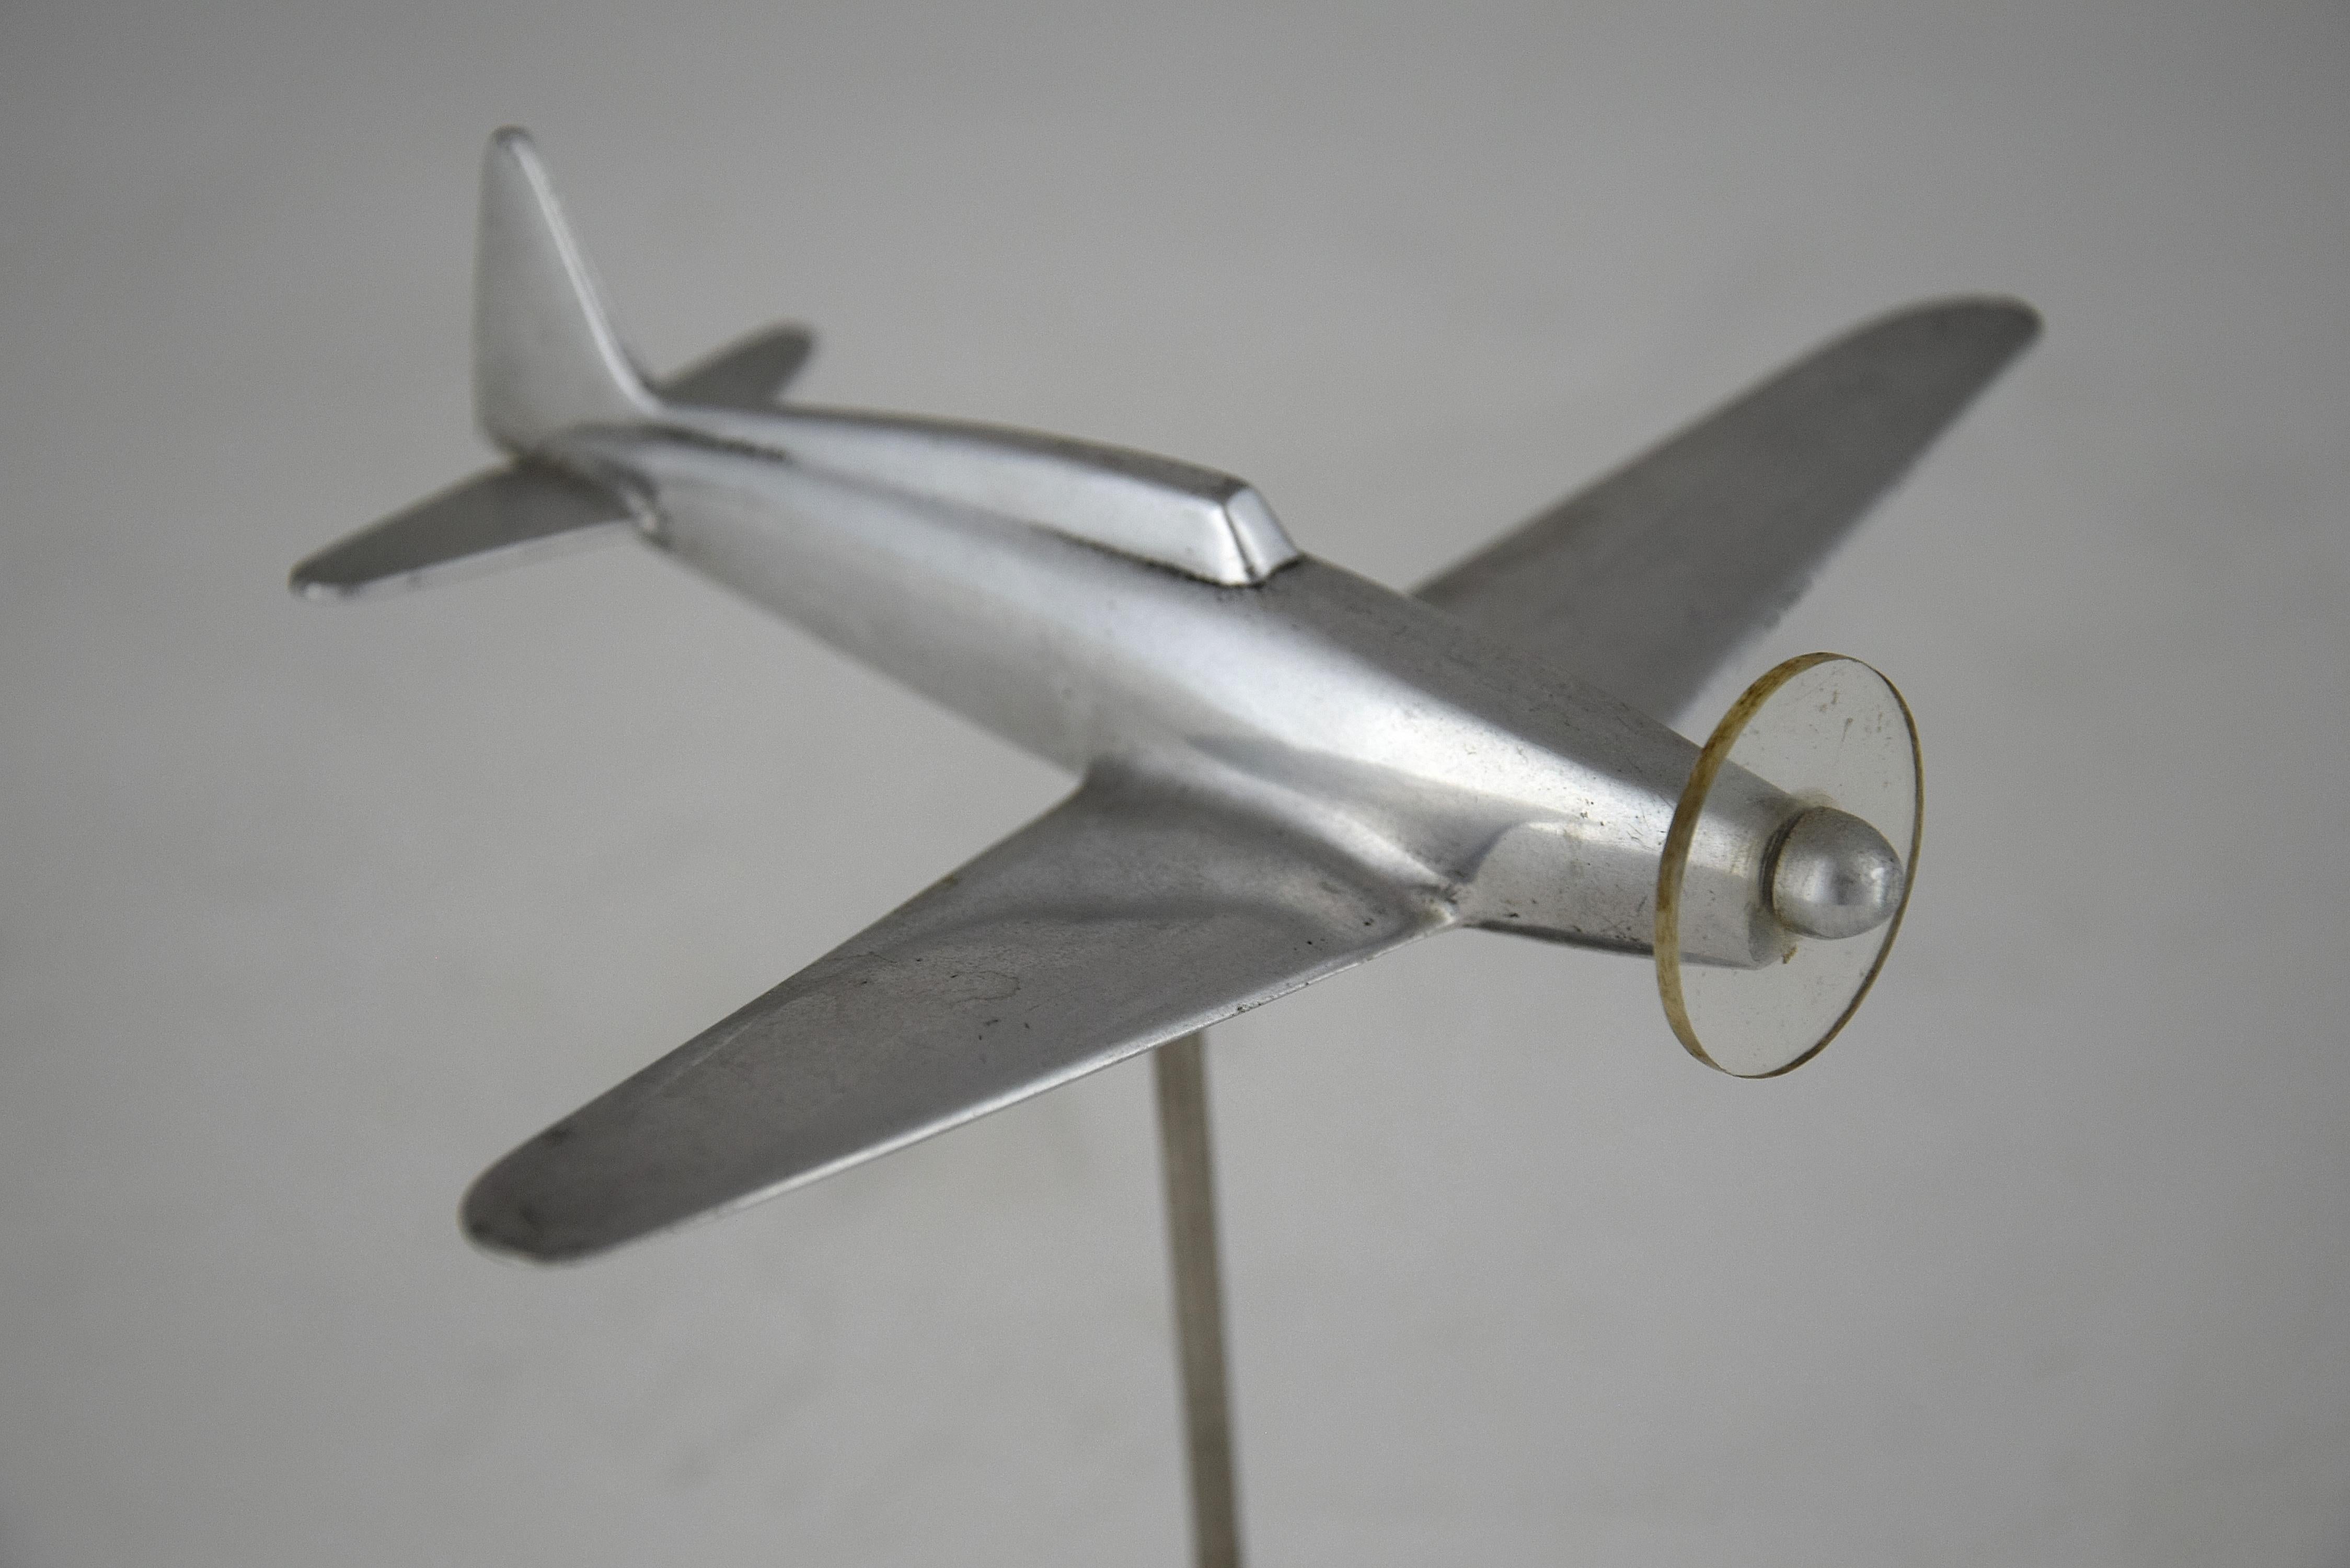 Magnifique maquette d'avion de chasse en métal du légendaire Spifire qui a été produit de 1938 à 1948.
Le Spitfire a été conçu comme un avion d'interception à court rayon d'action et à hautes performances par R. J. Mitchell, concepteur en chef de